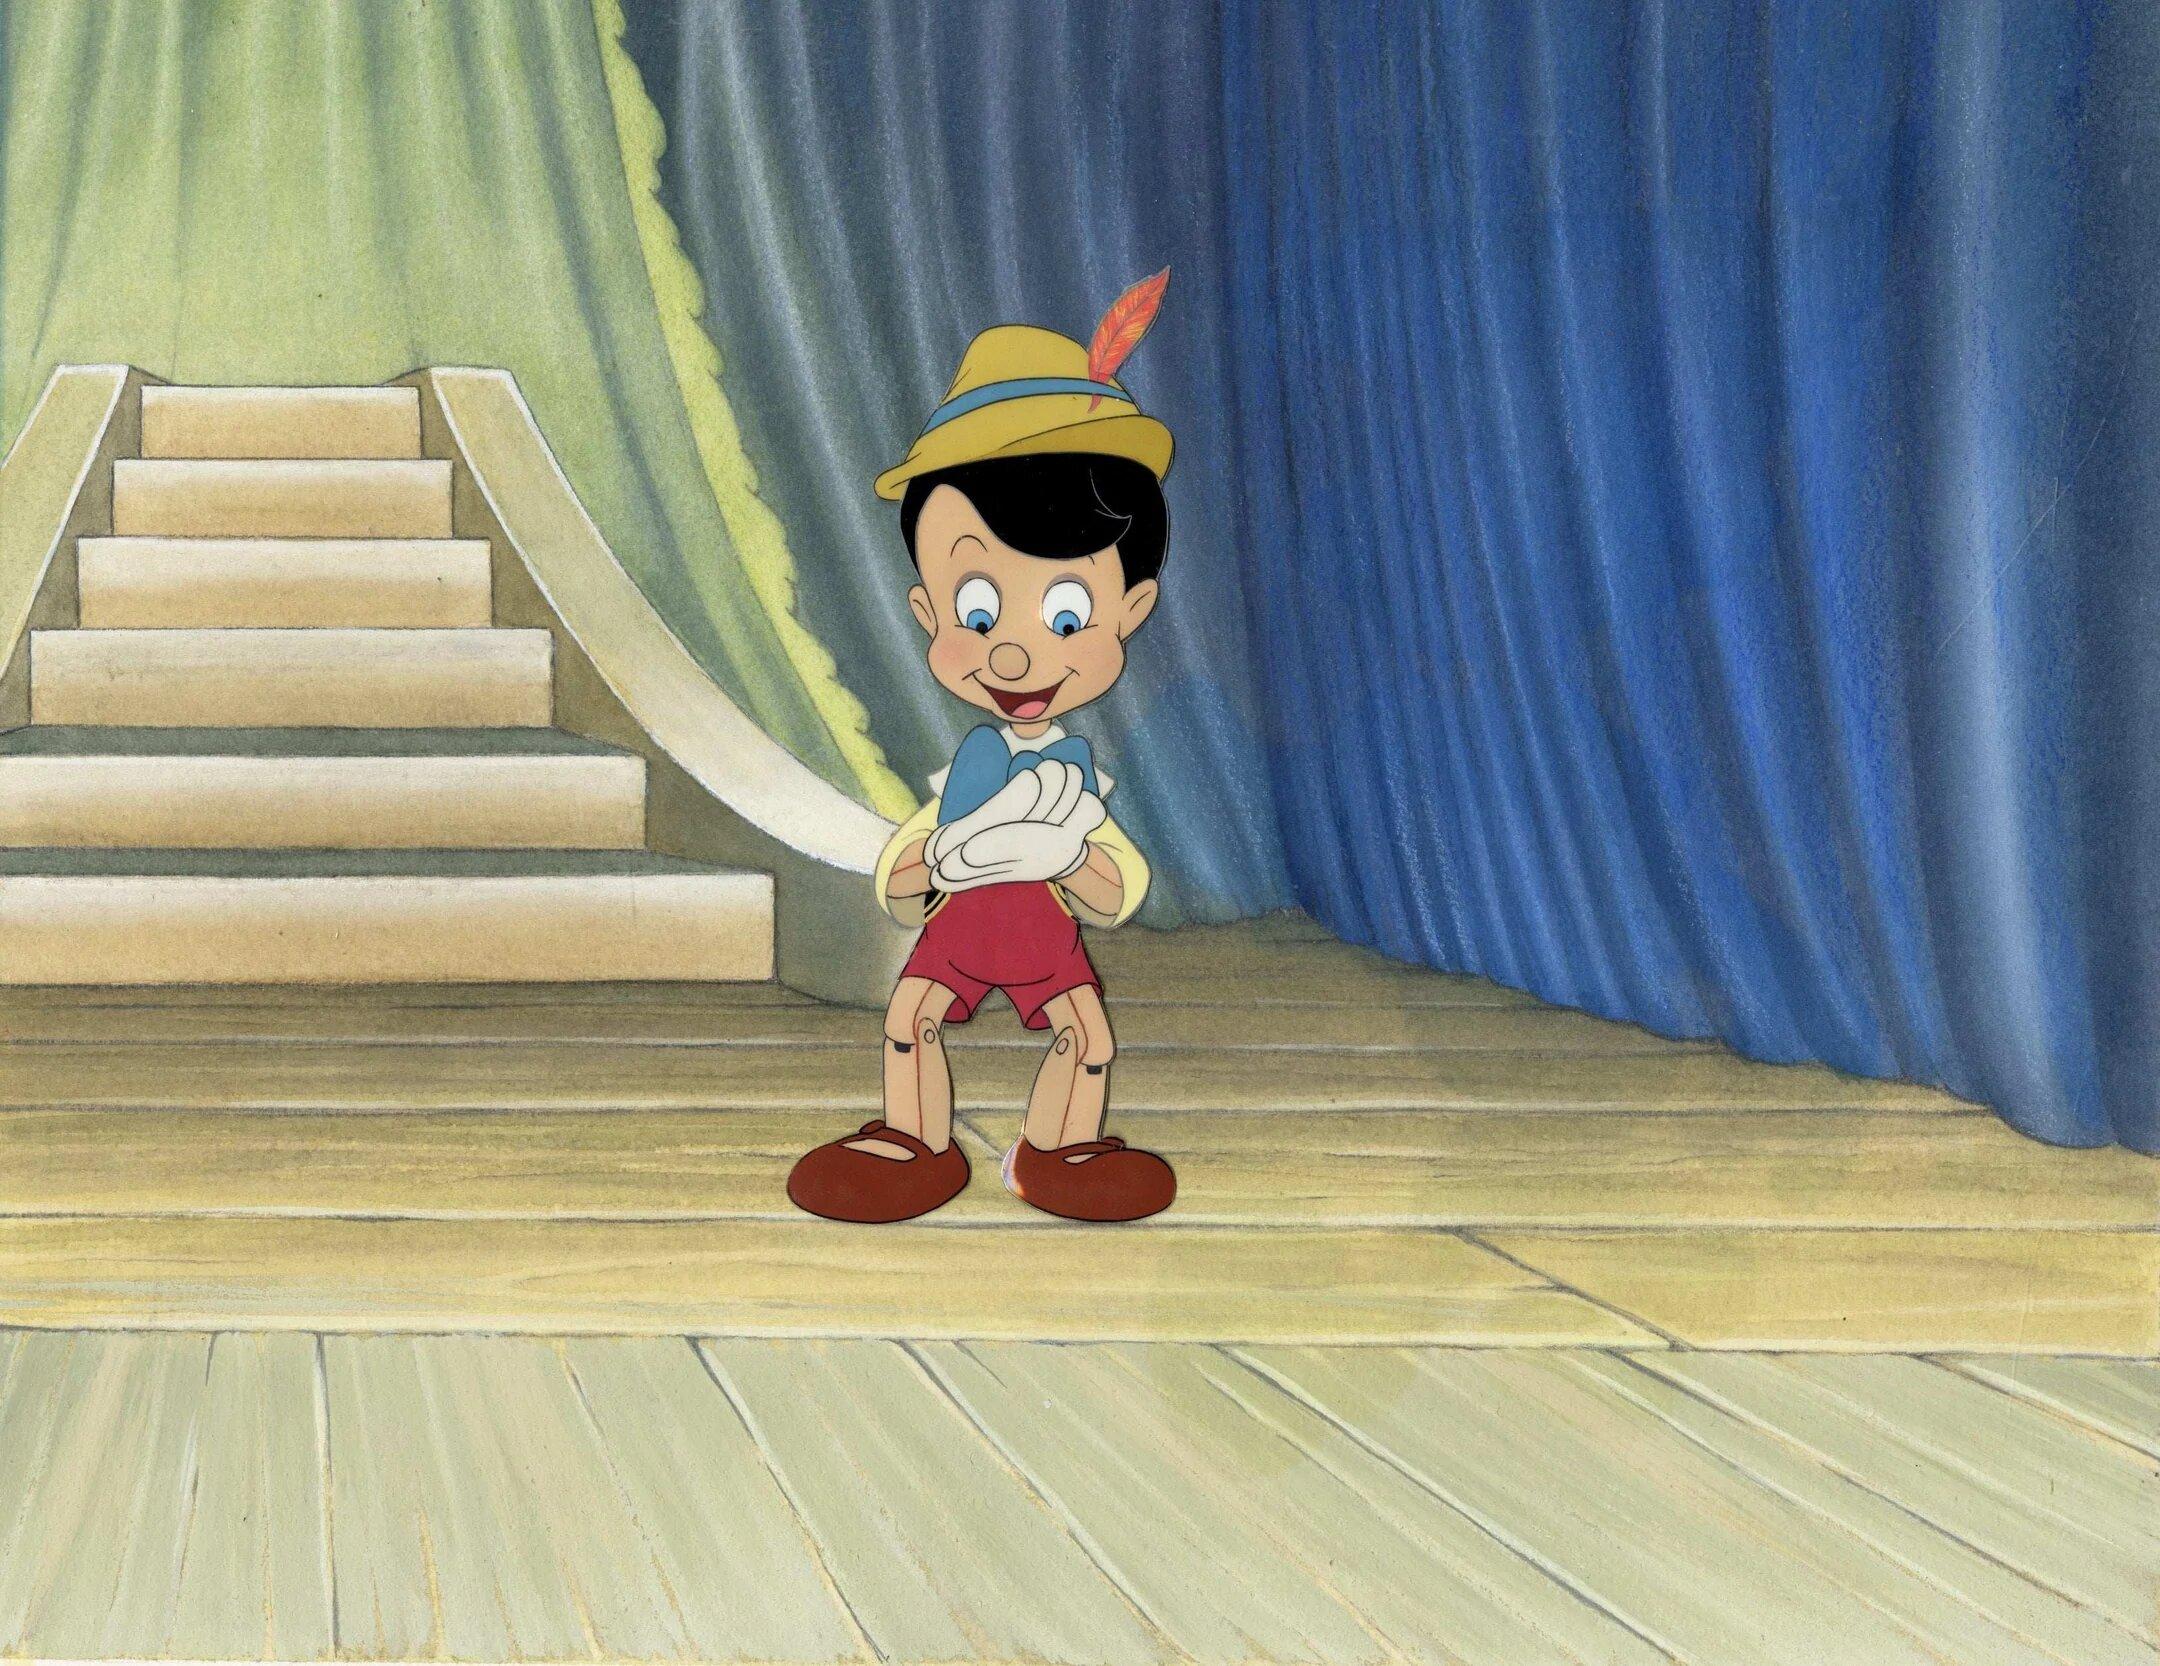 Cel de production originale de Pinocchio sur le contexte de production : Pinocchio - Art de Walt Disney Studio Artists